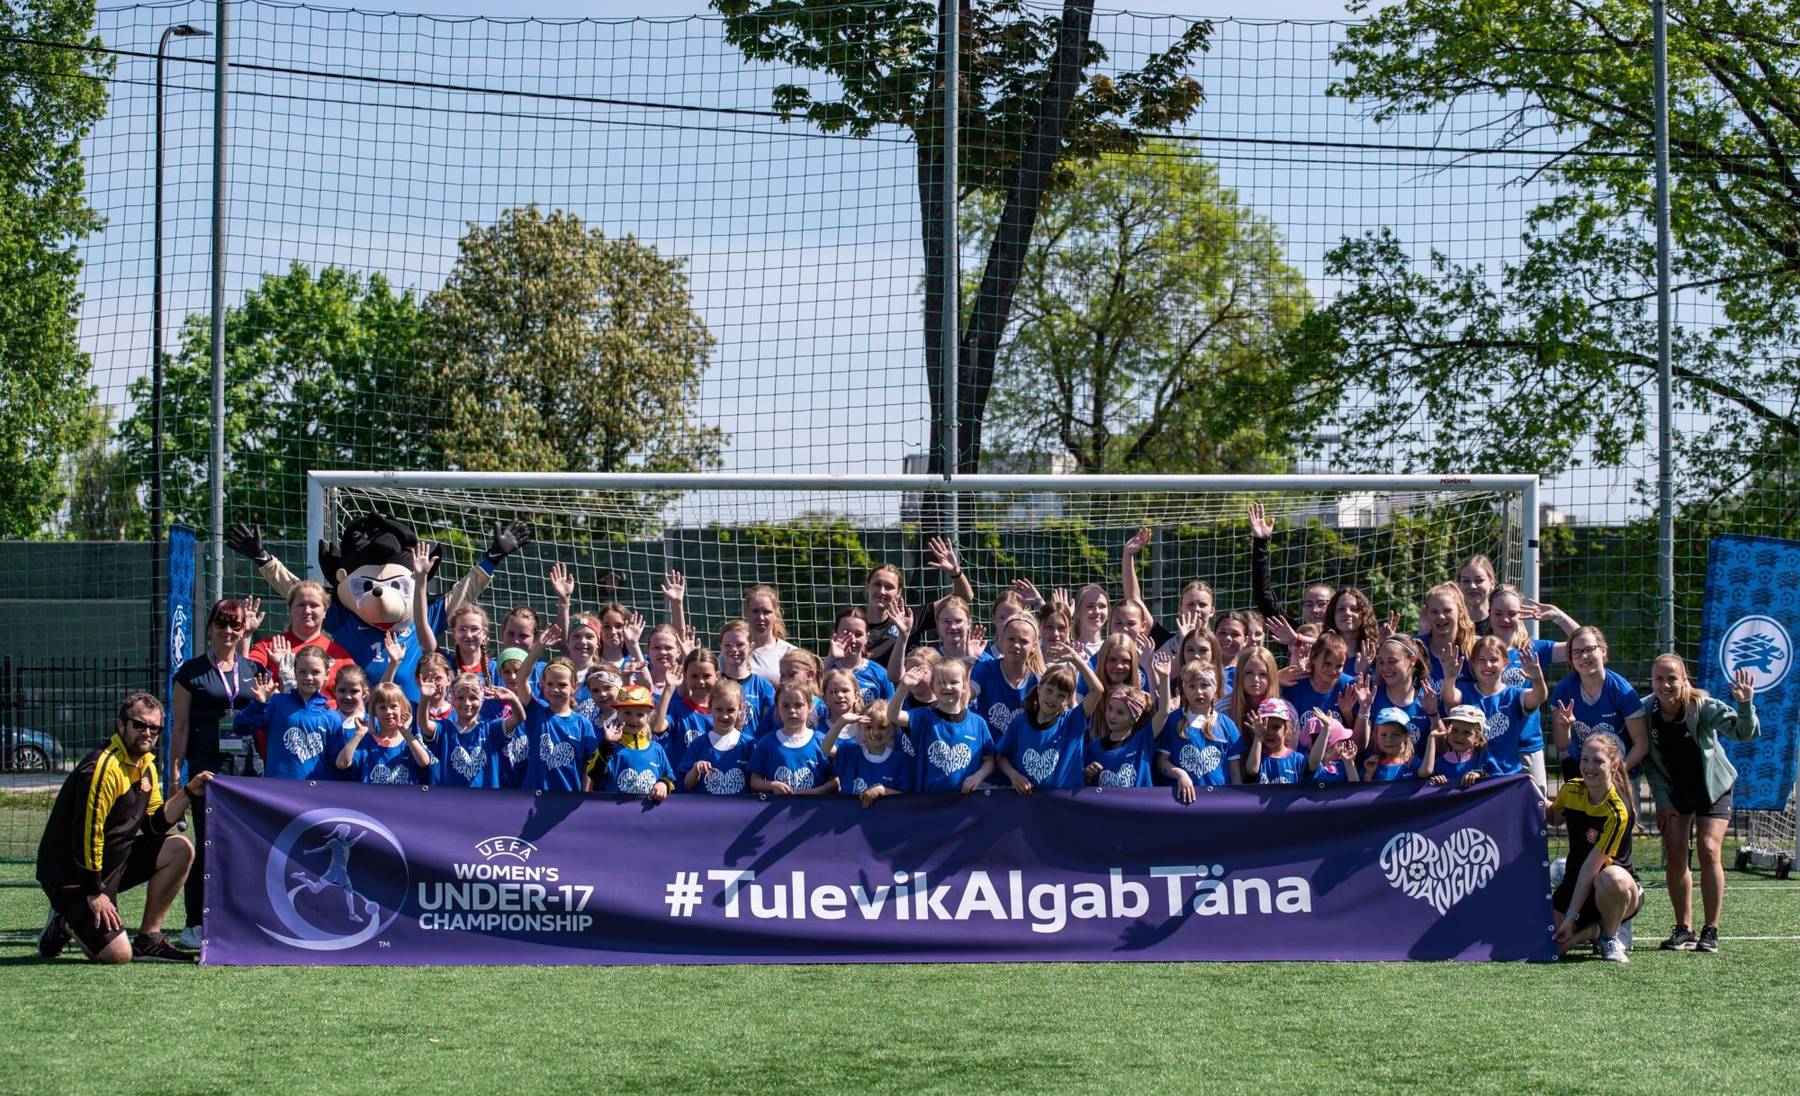 Tüdrukute jalgpallifestival Tartus tõi kokku ligi poolsada osalejat